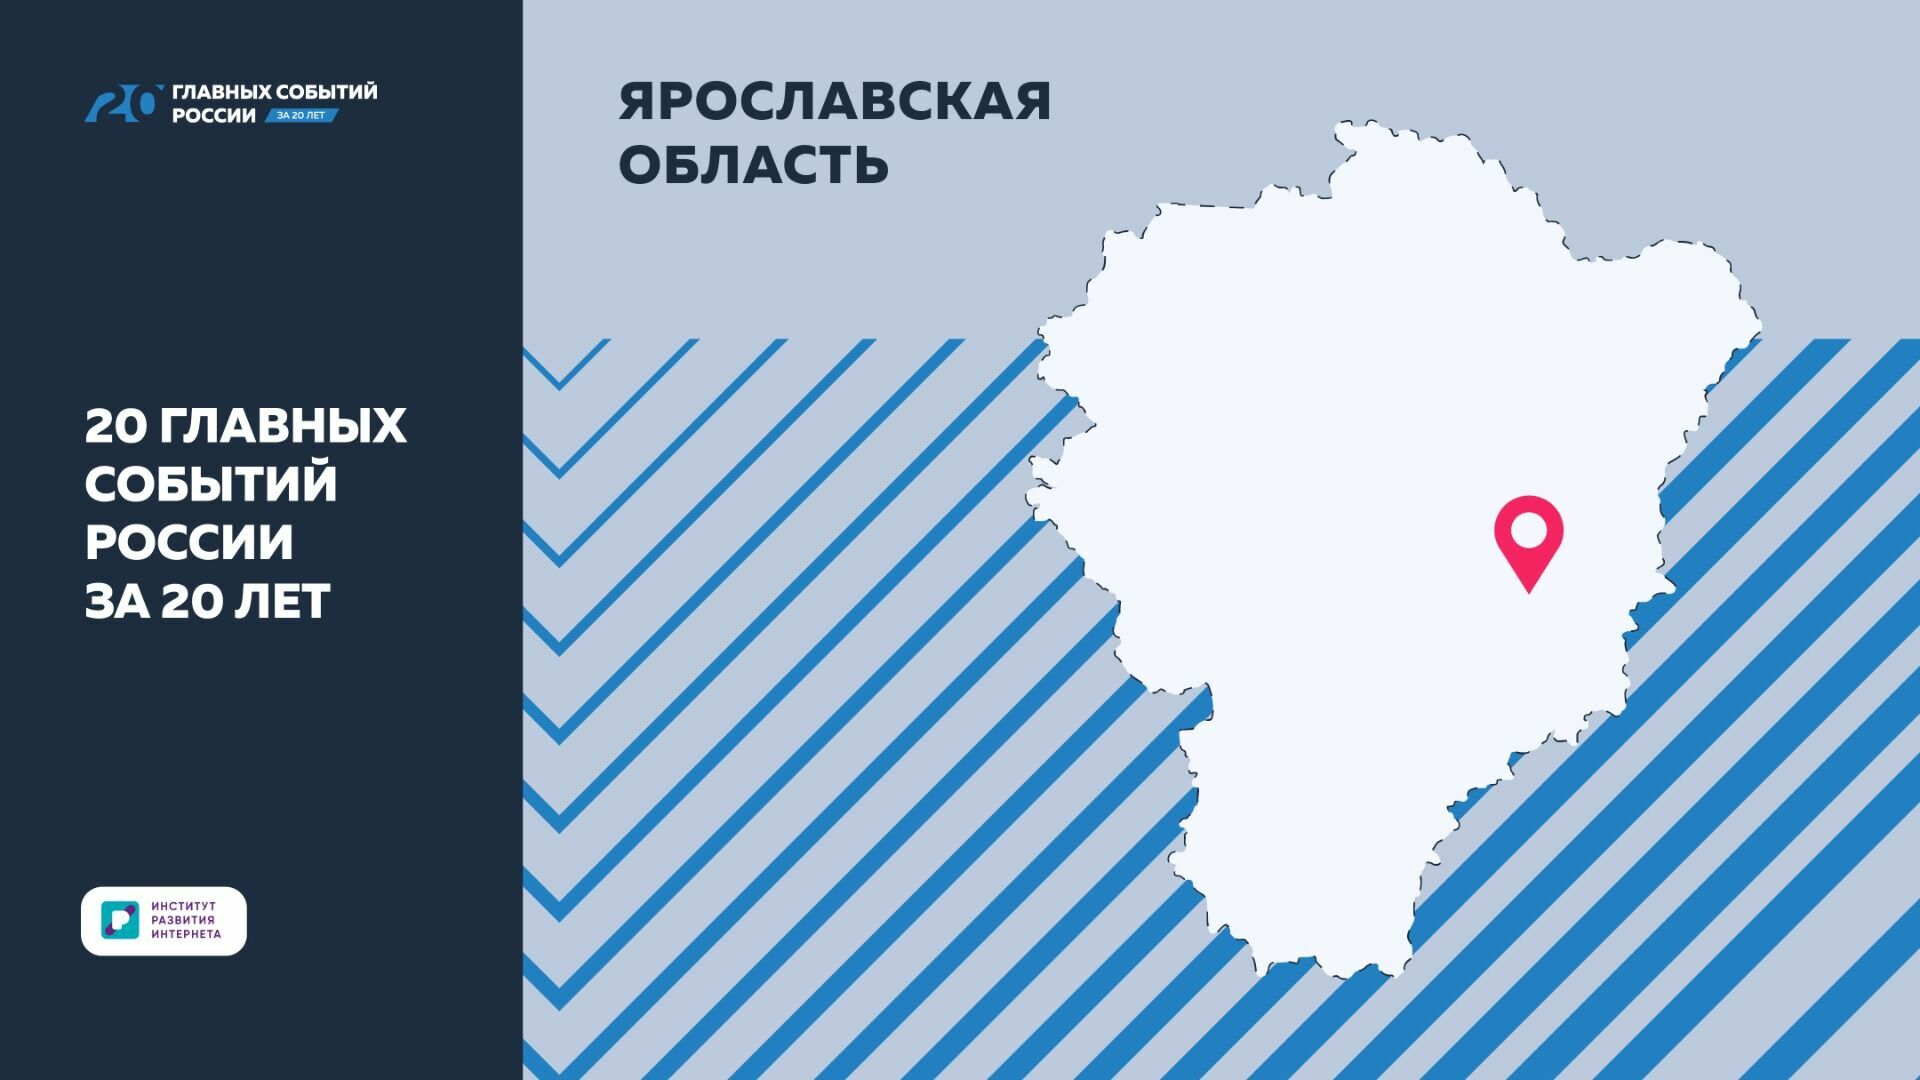 ИРИ: Успехи Ярославской области вошли в “20 главных событий России за 20 лет”